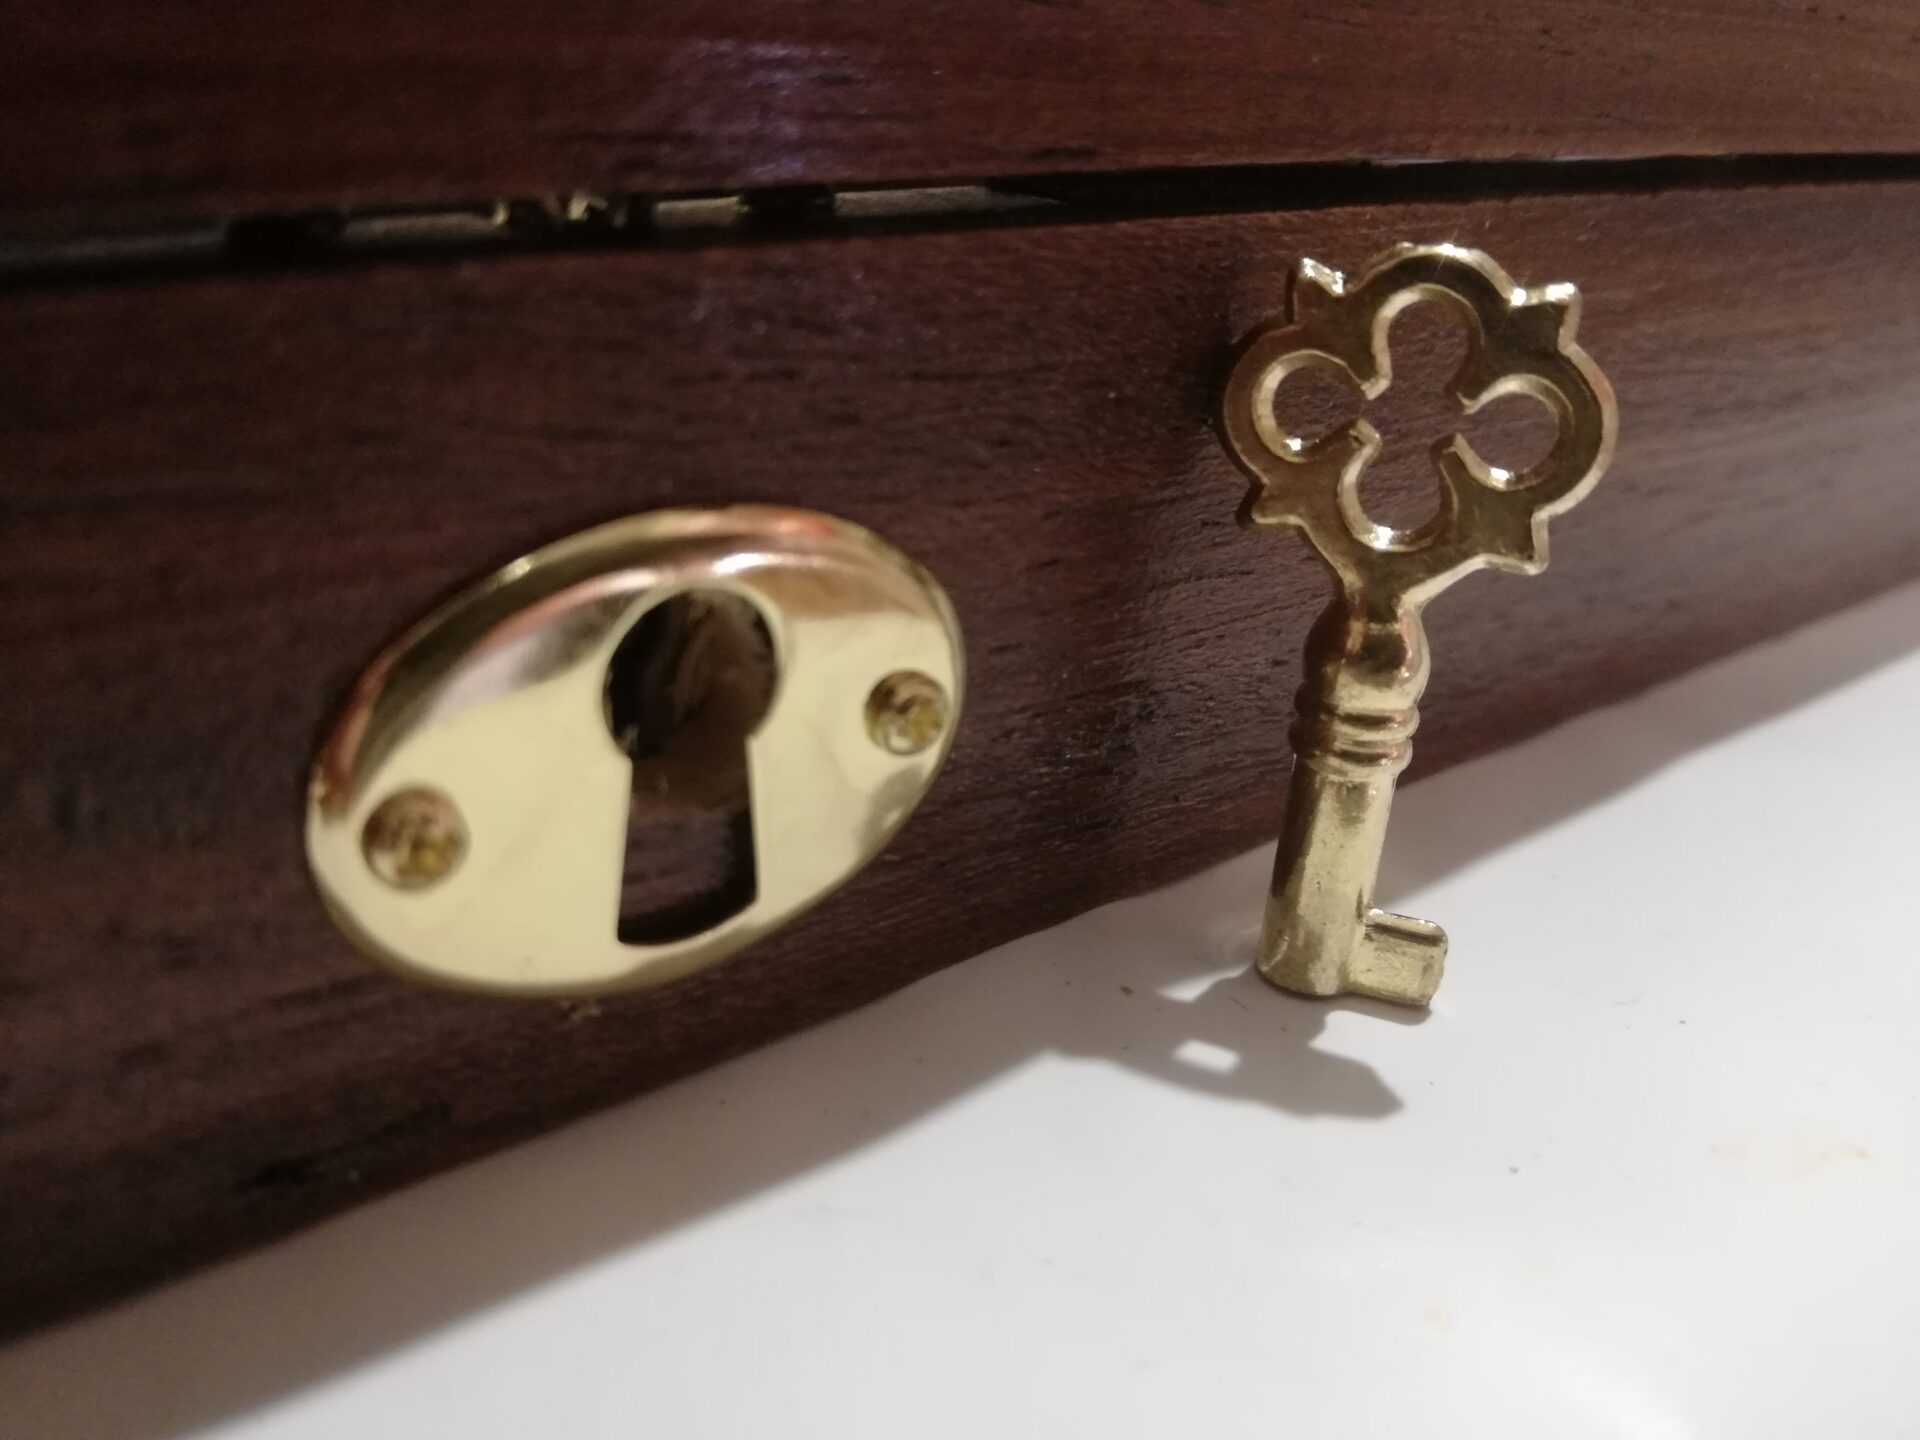 Serratura - Lock with key - Serrure - Mit Schlüssel verriegeln - Cerradura  con llave - Coins&More